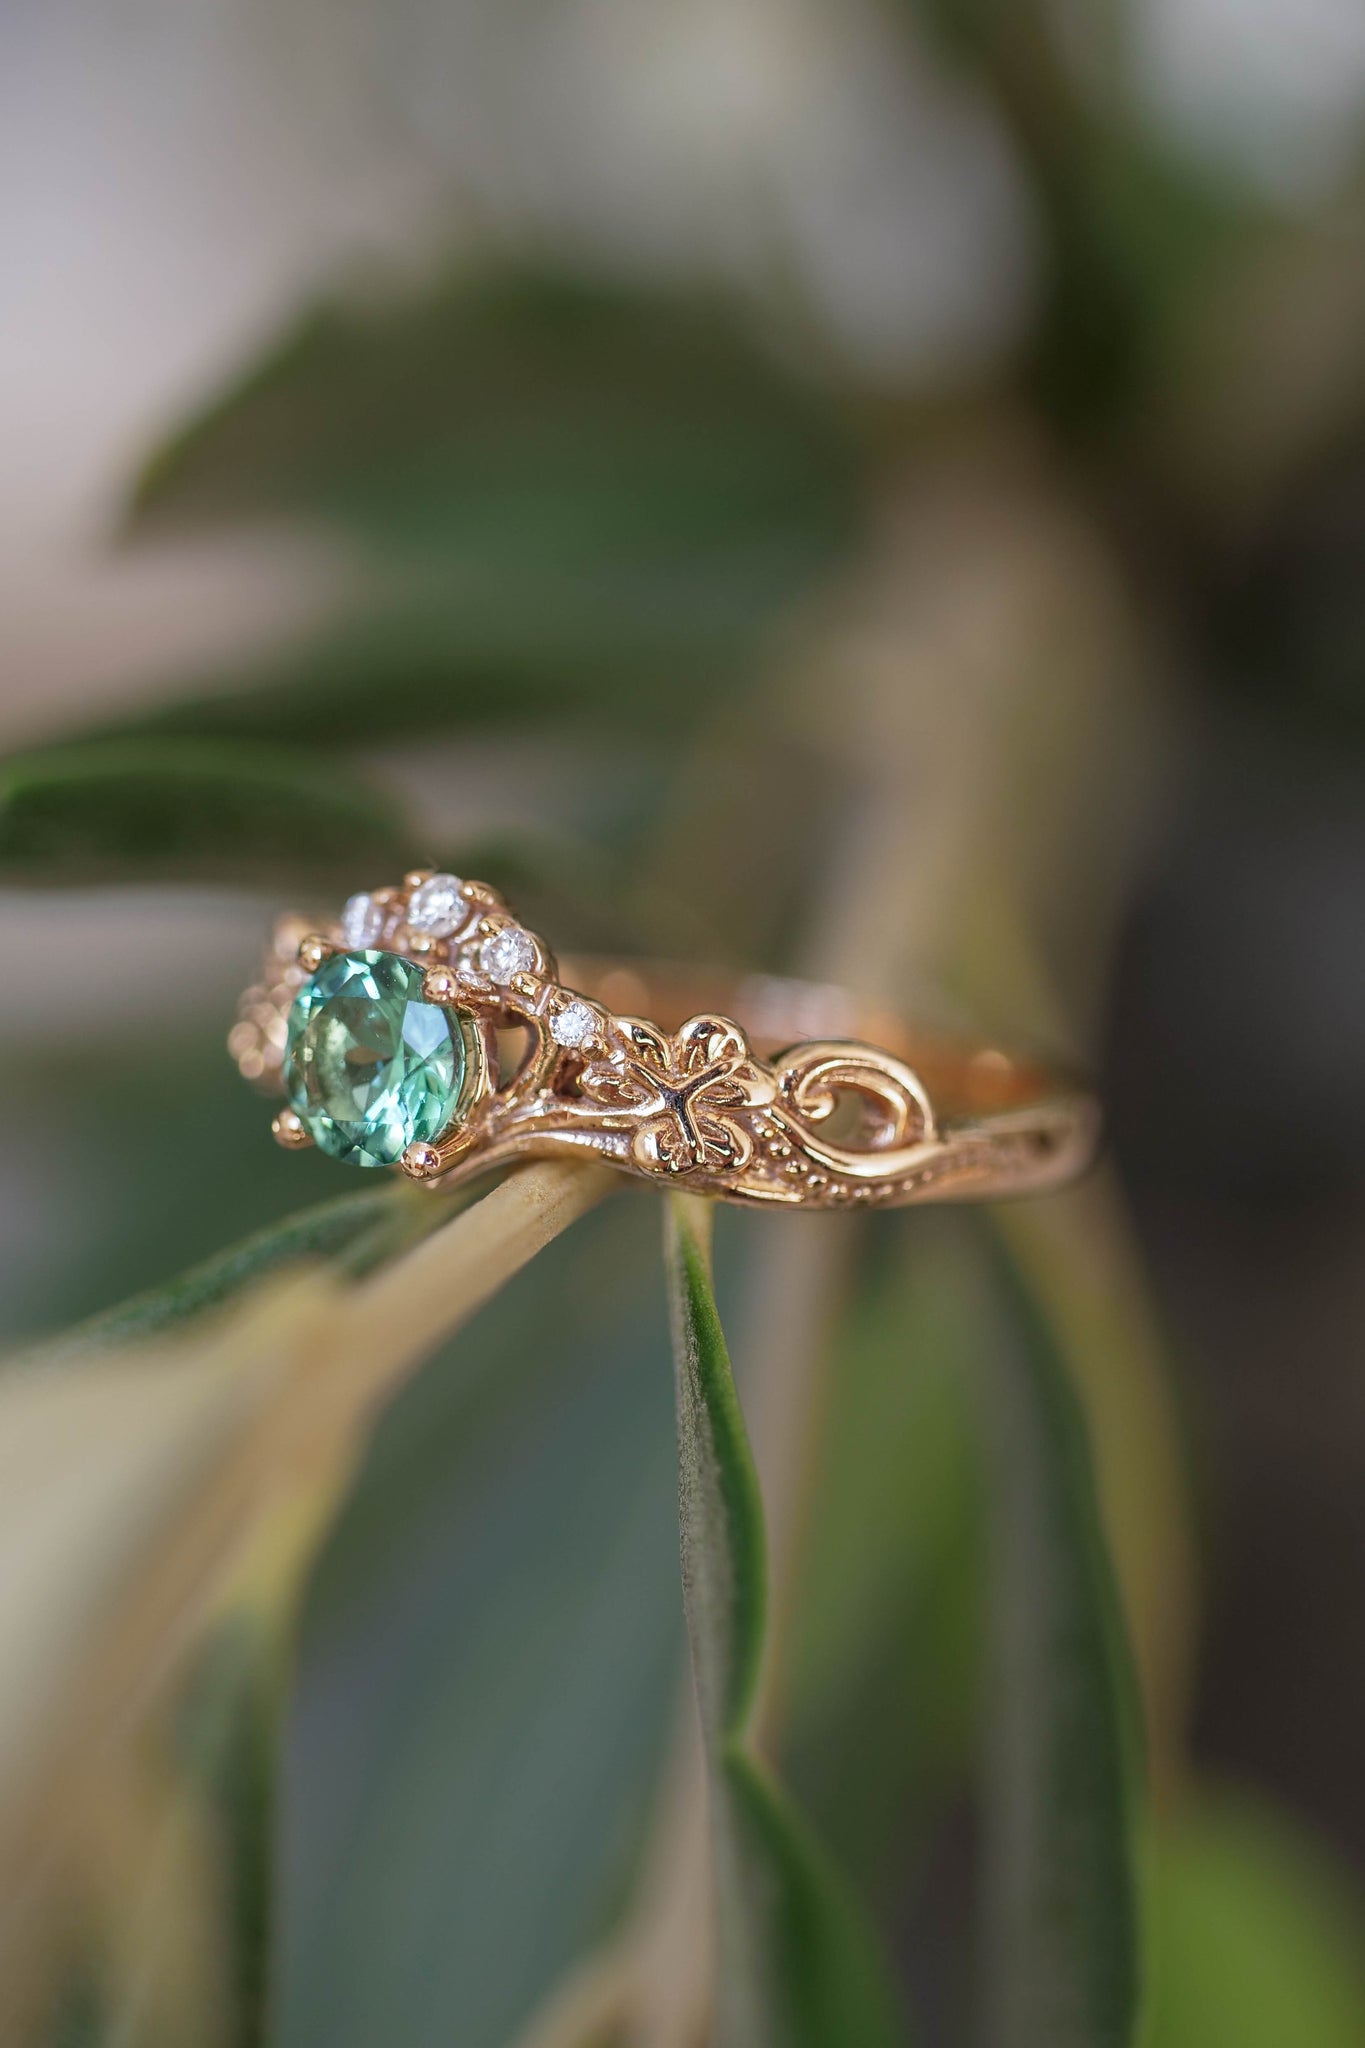 Mint green tourmaline engagement ring / Horta - Eden Garden Jewelry™